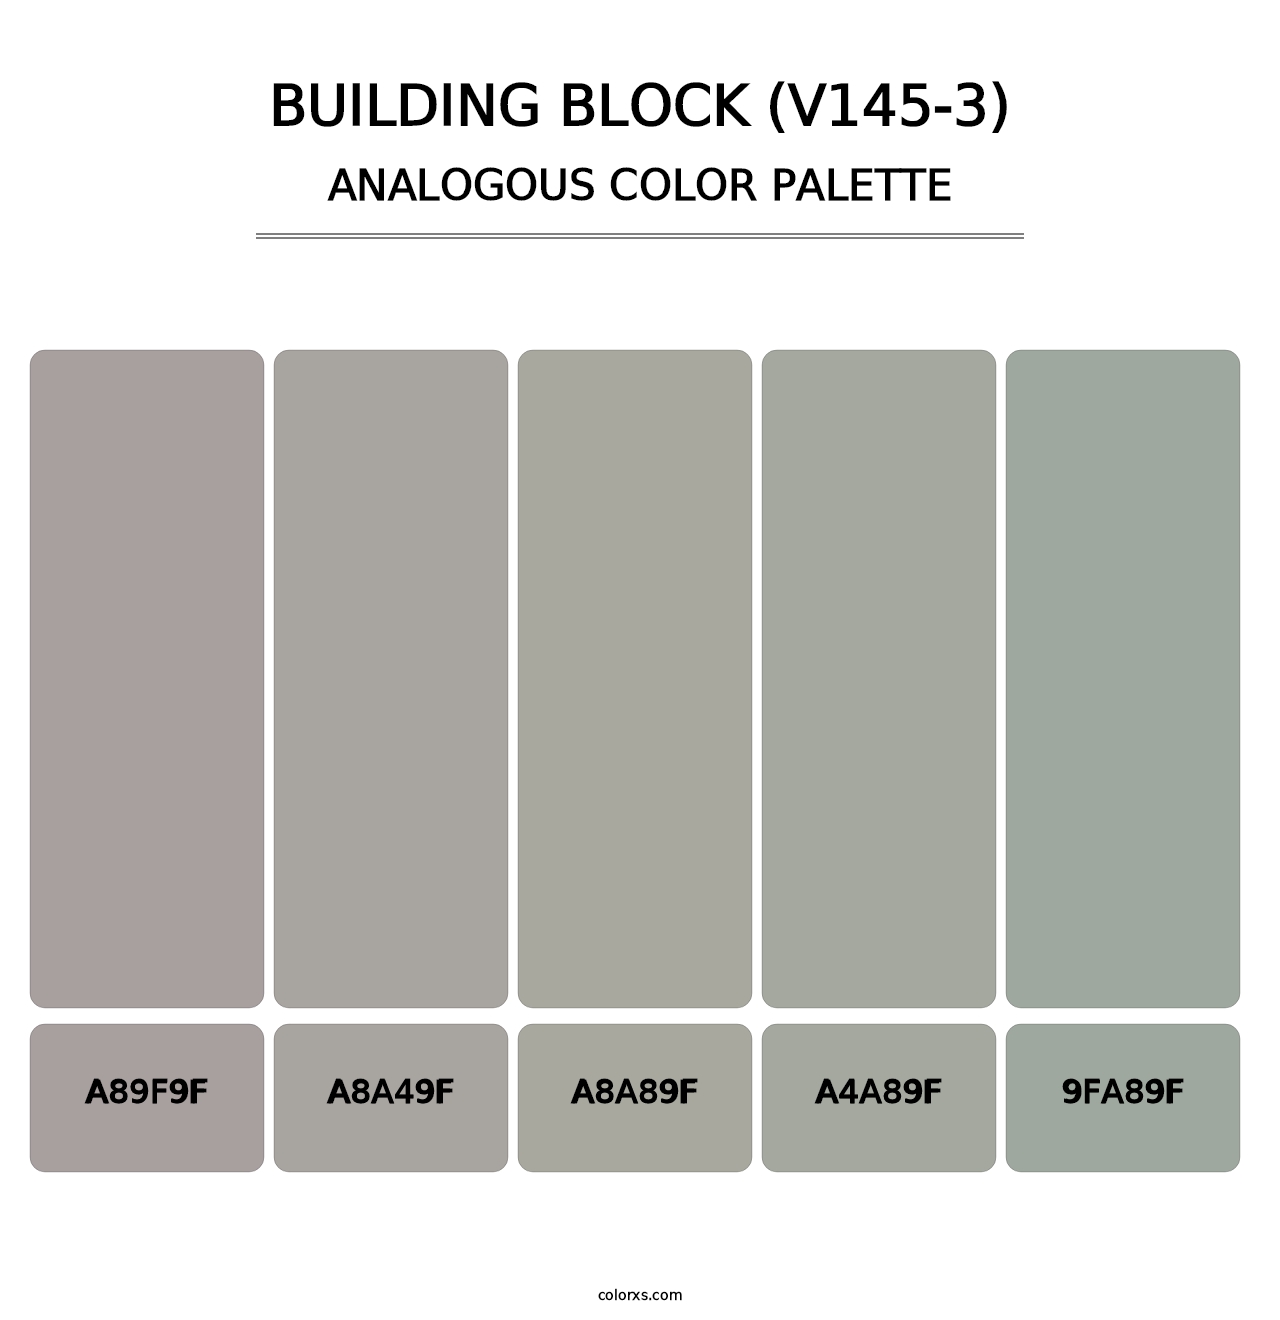 Building Block (V145-3) - Analogous Color Palette